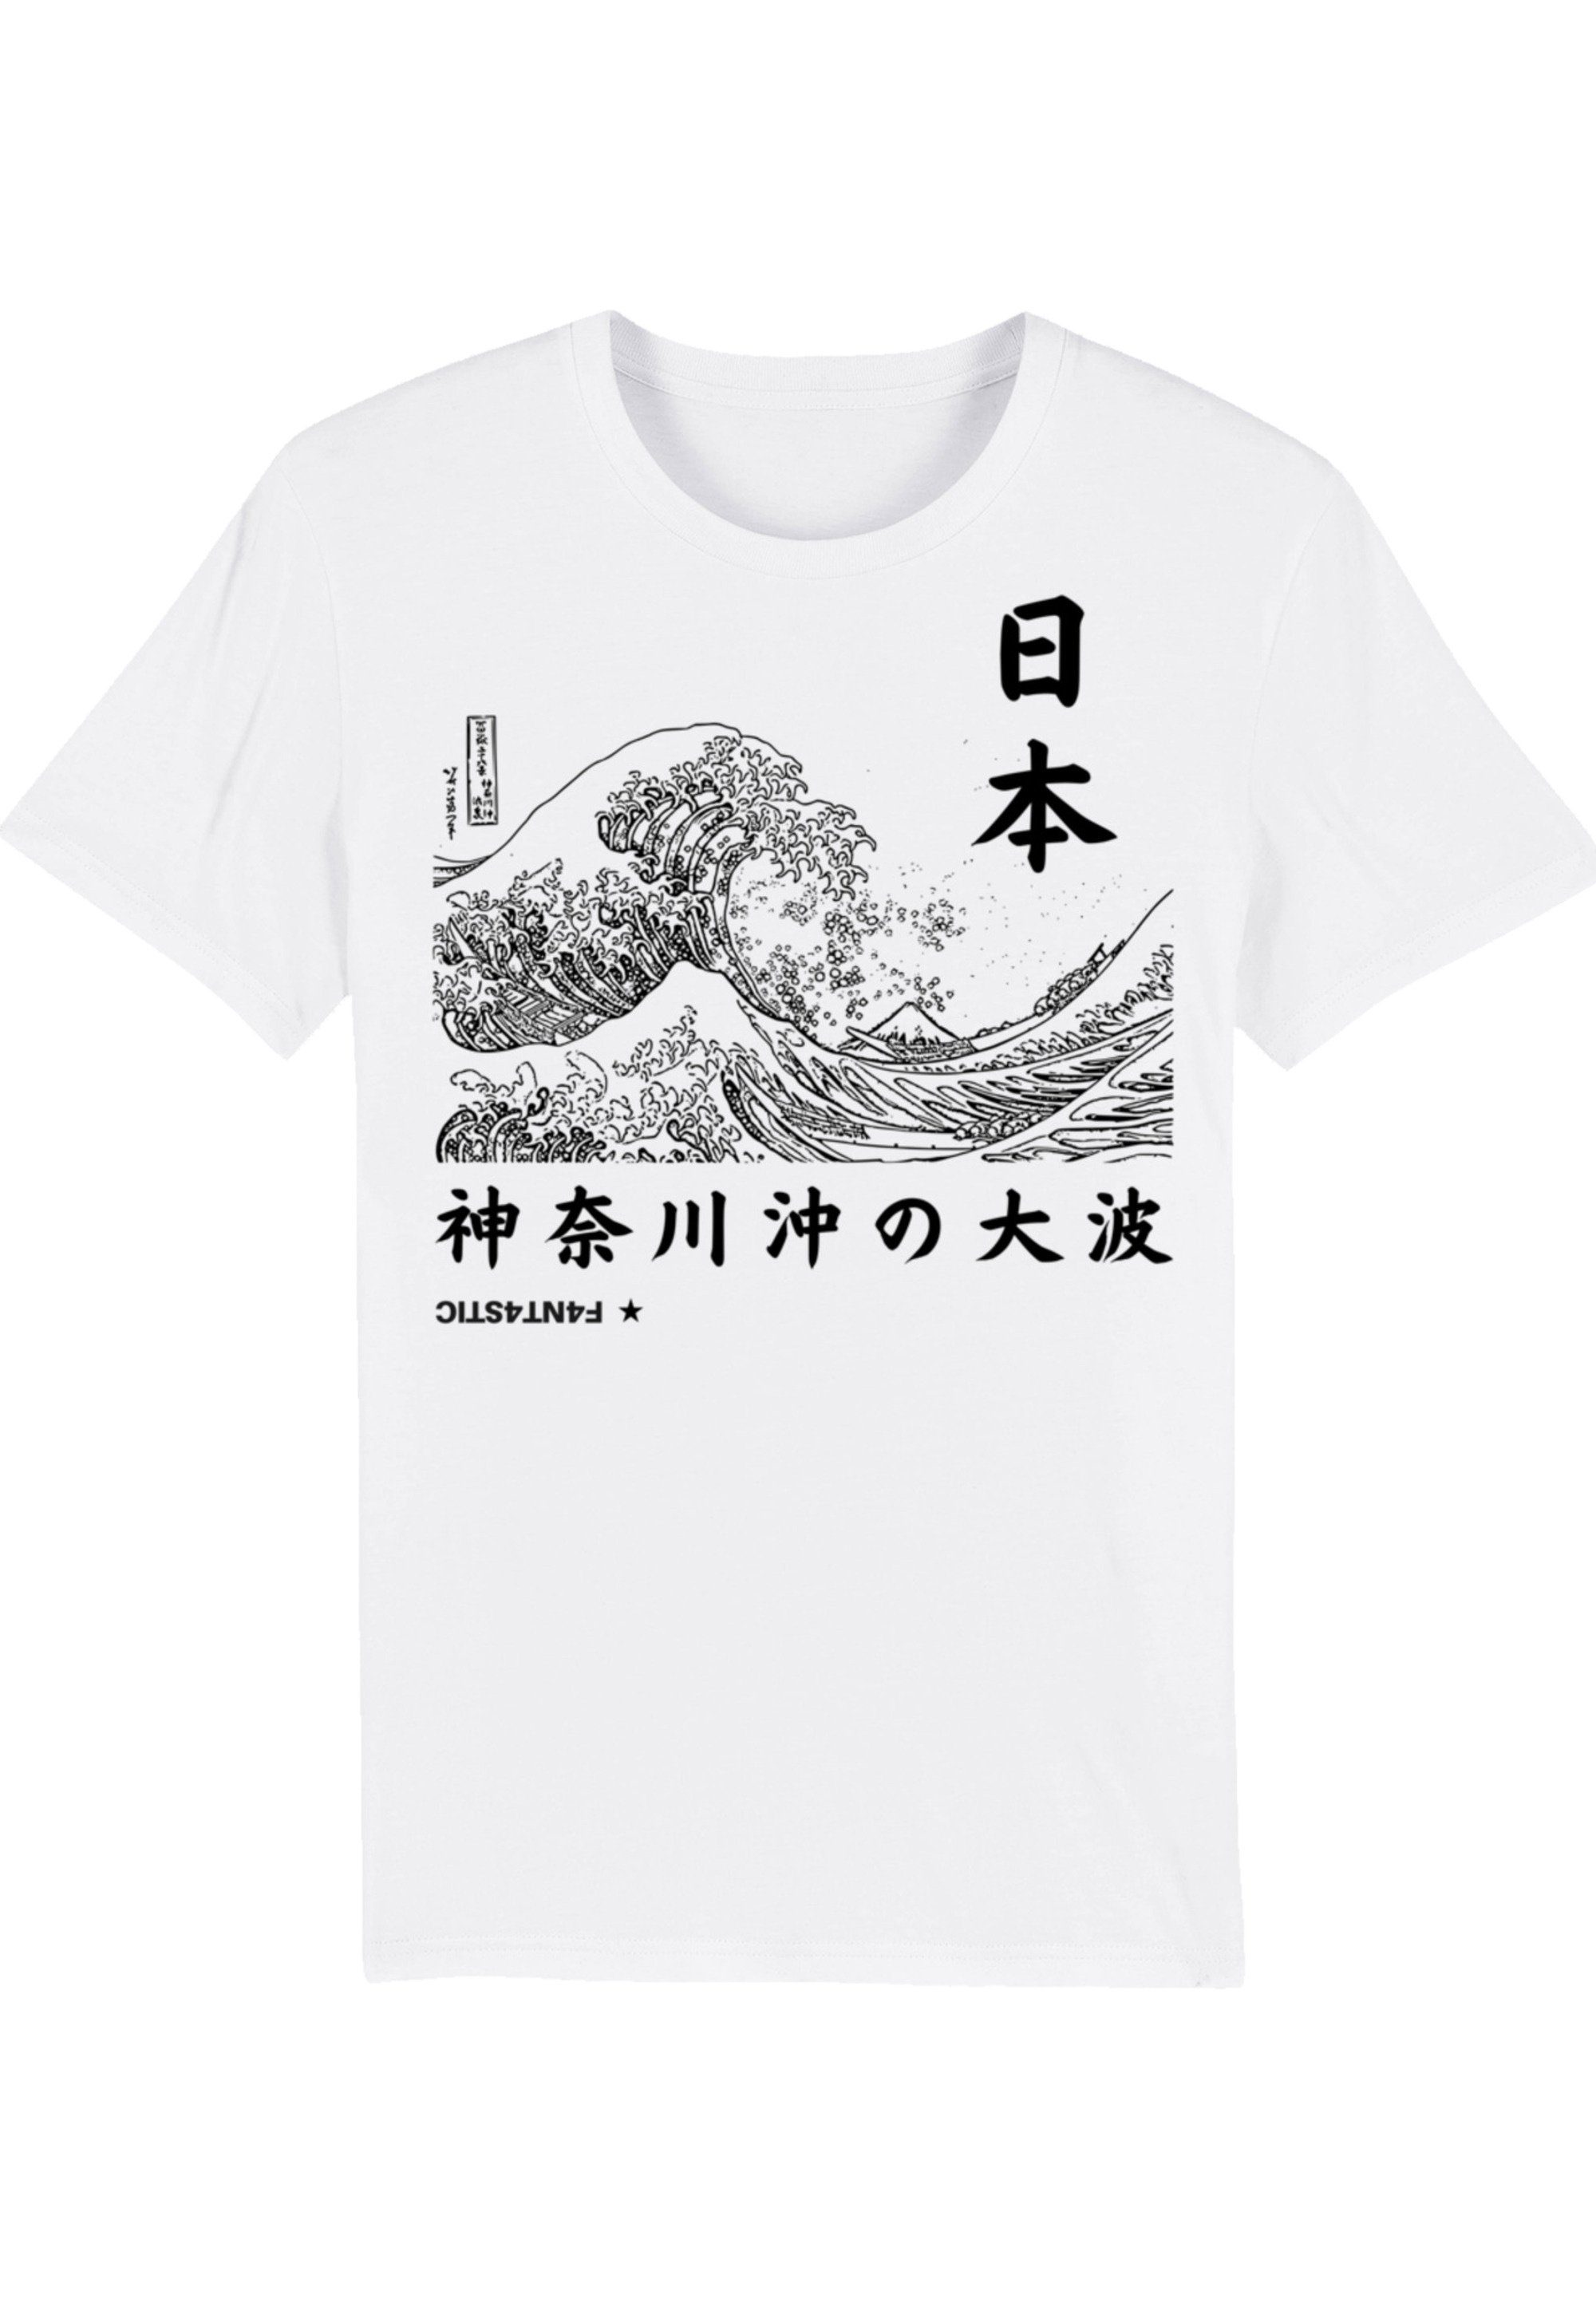 F4NT4STIC T-Shirt Kanagawa Welle Japan Print, Hochwertige und  umweltfreundliche Baumwolle